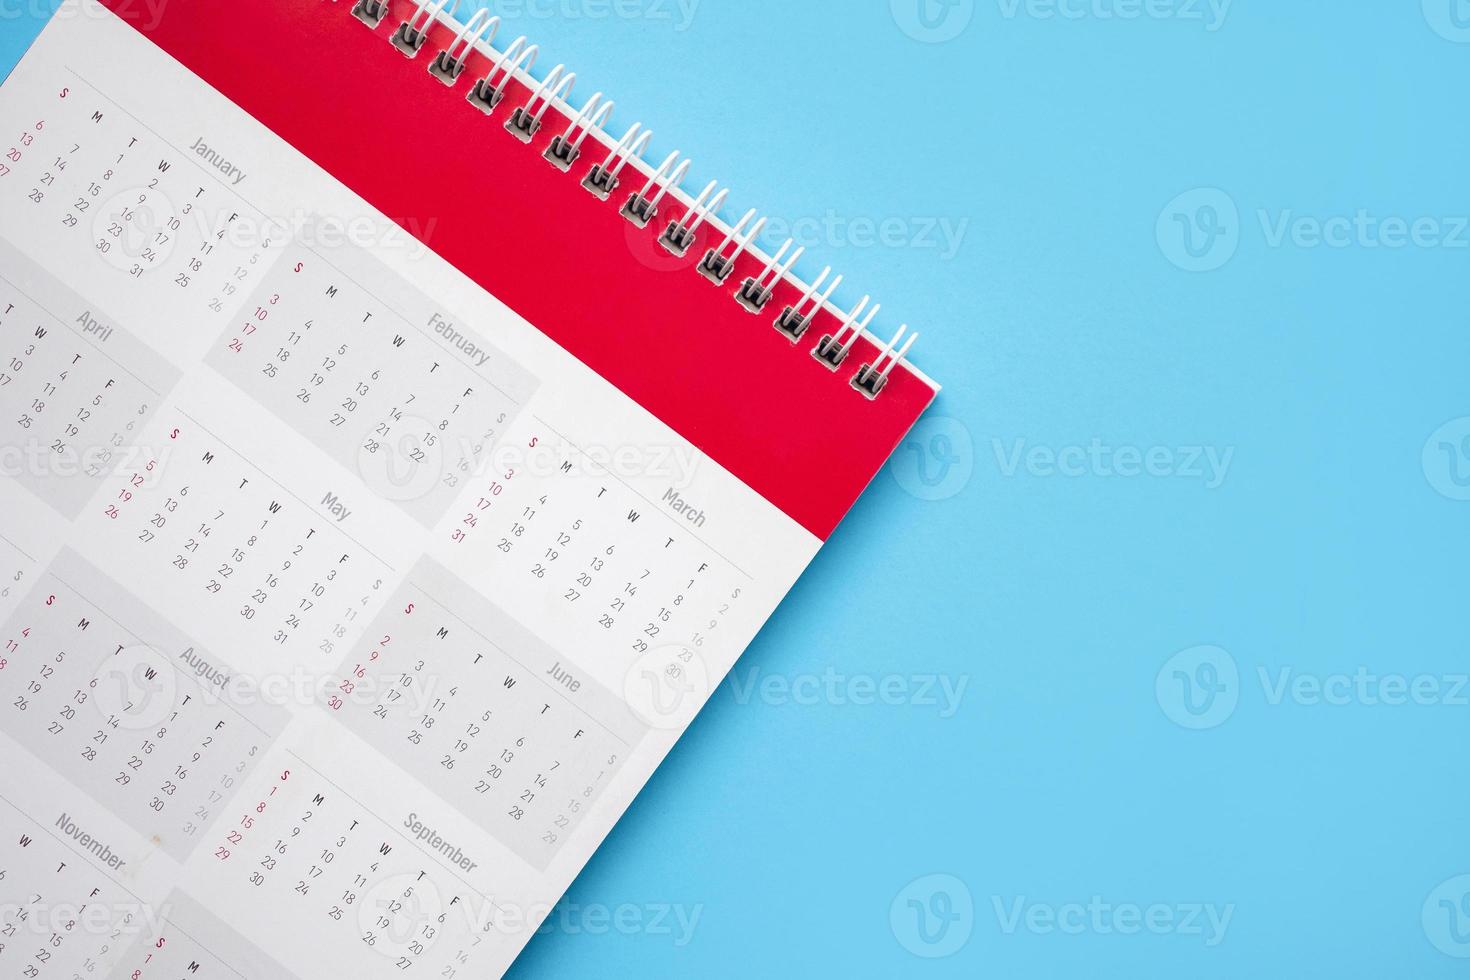 página de calendário no conceito de reunião de compromisso de planejamento de negócios de fundo azul foto